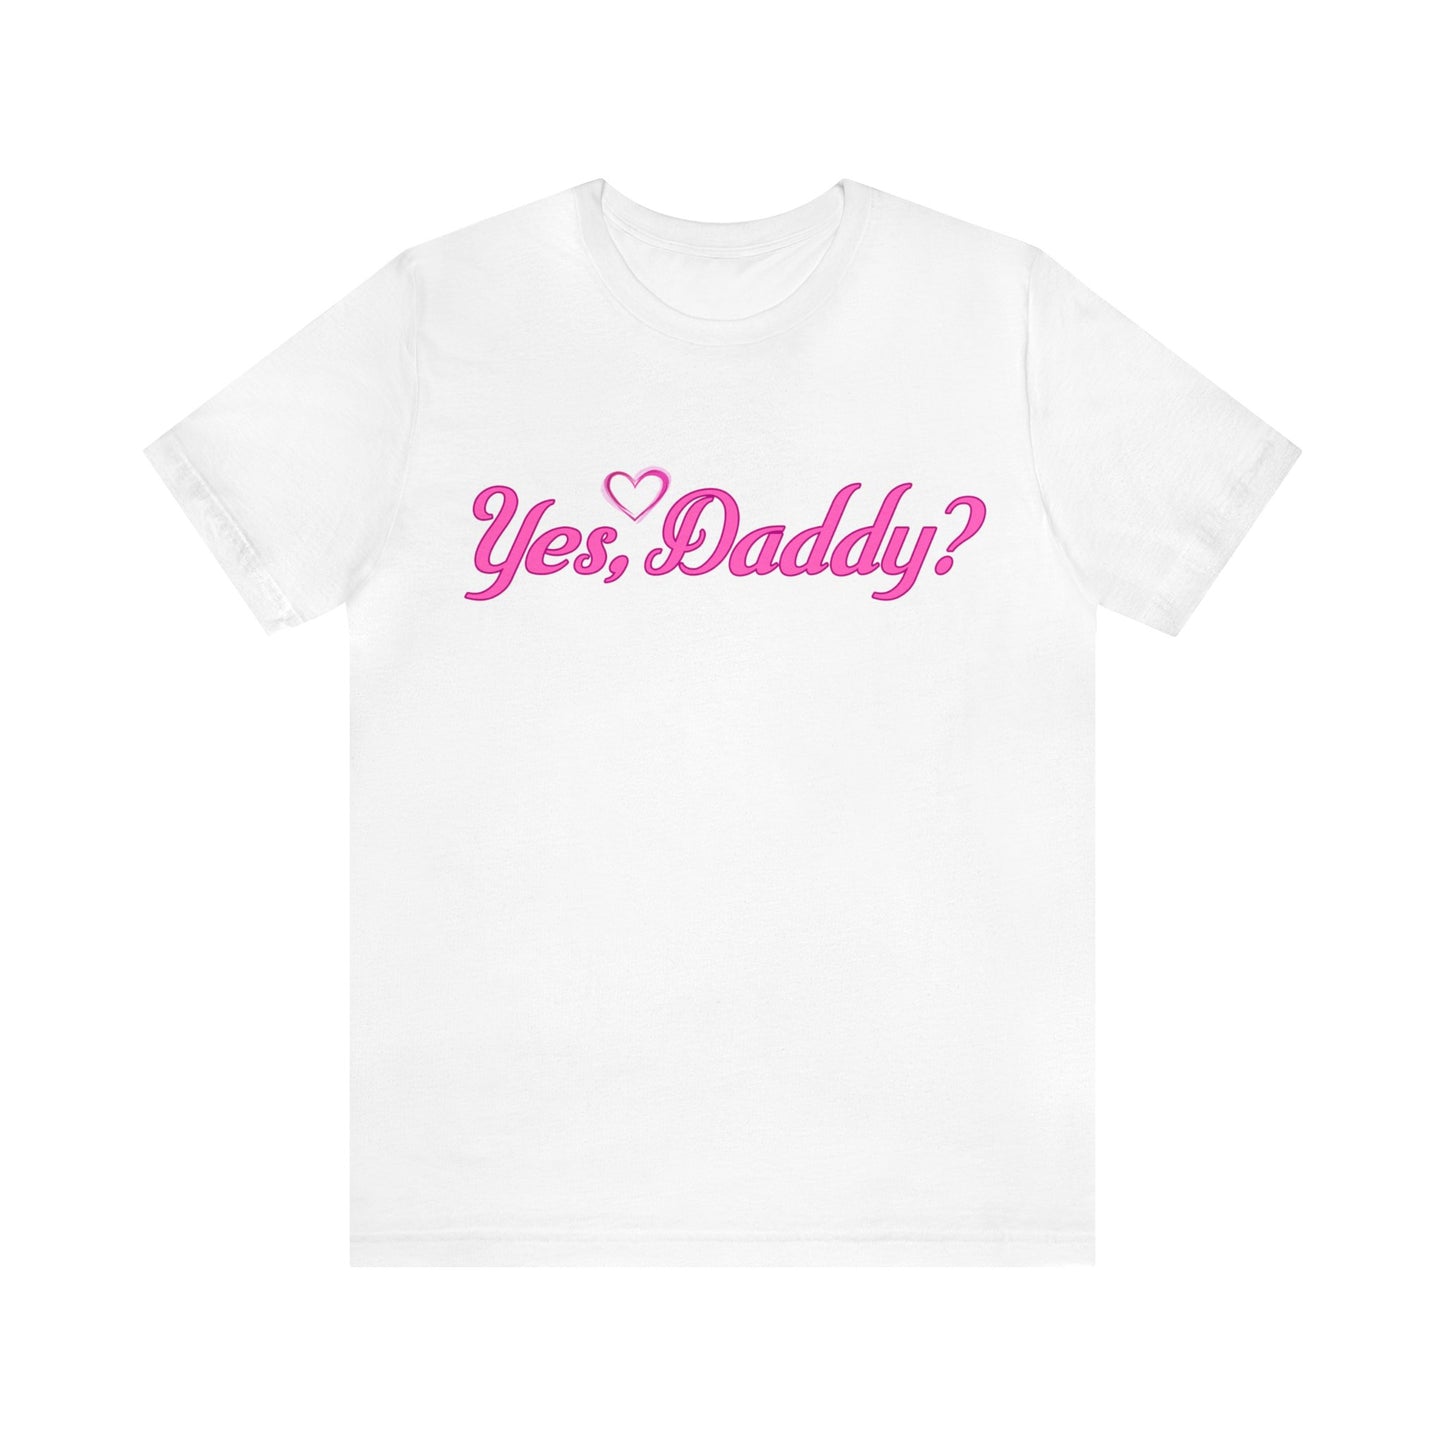 Yes Daddy Shirt | Adult Shirt | Sexy Shirt | BDSM Shirt  | Kinky Shirt